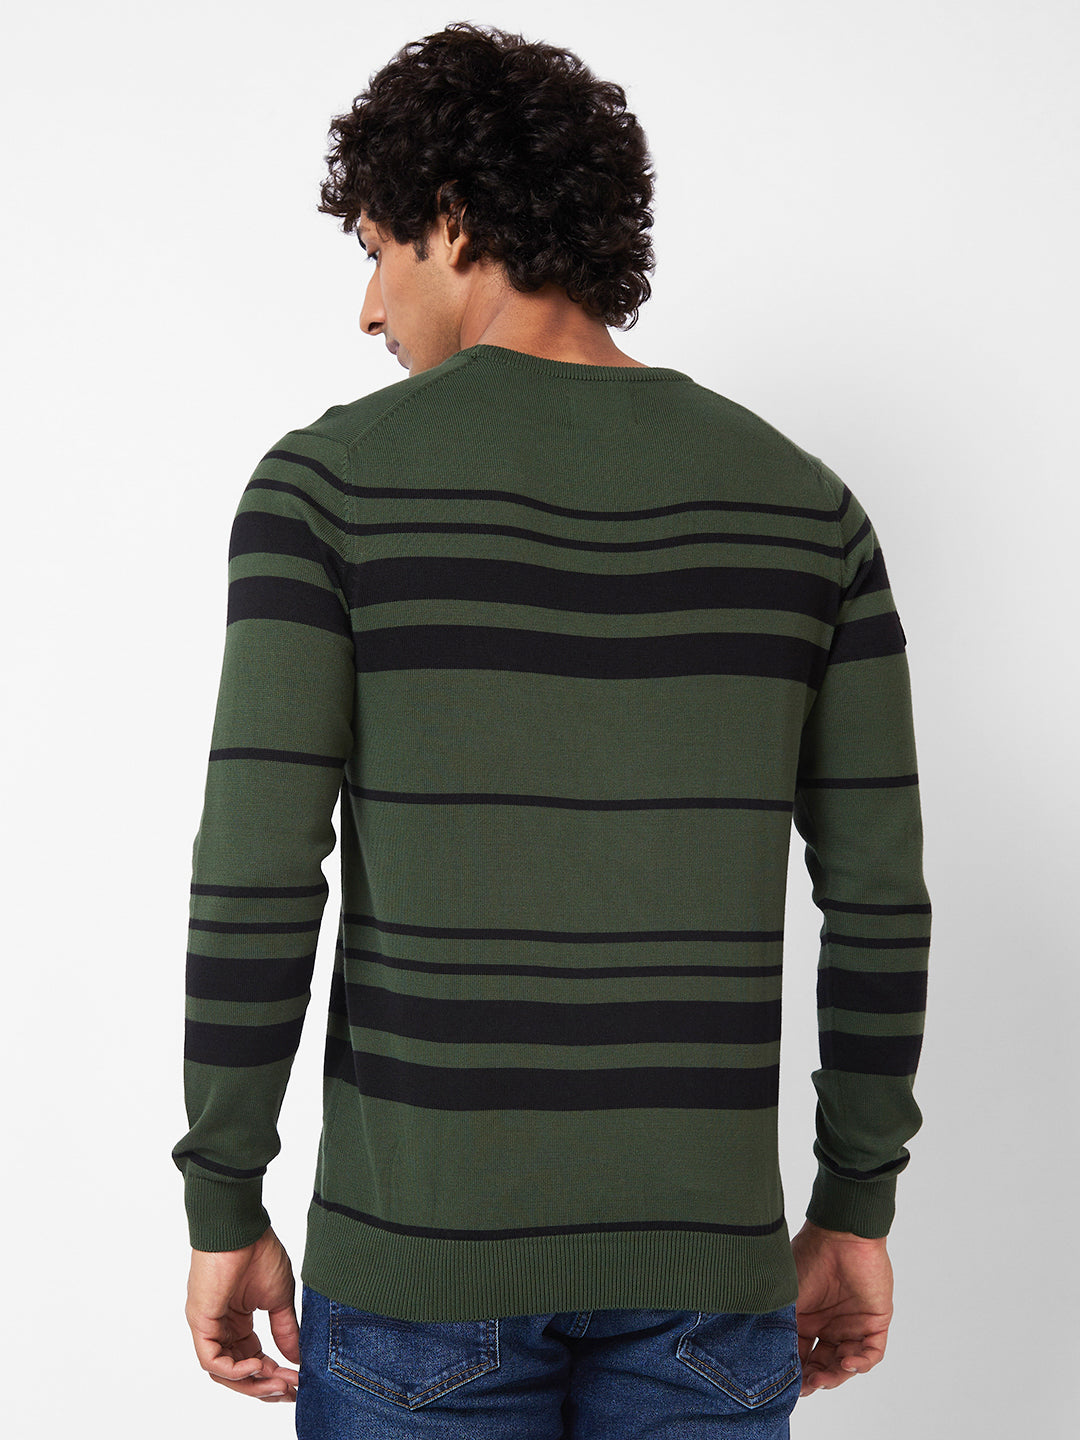 Spykar Collarless Full Sleeves Green Sweater For Men